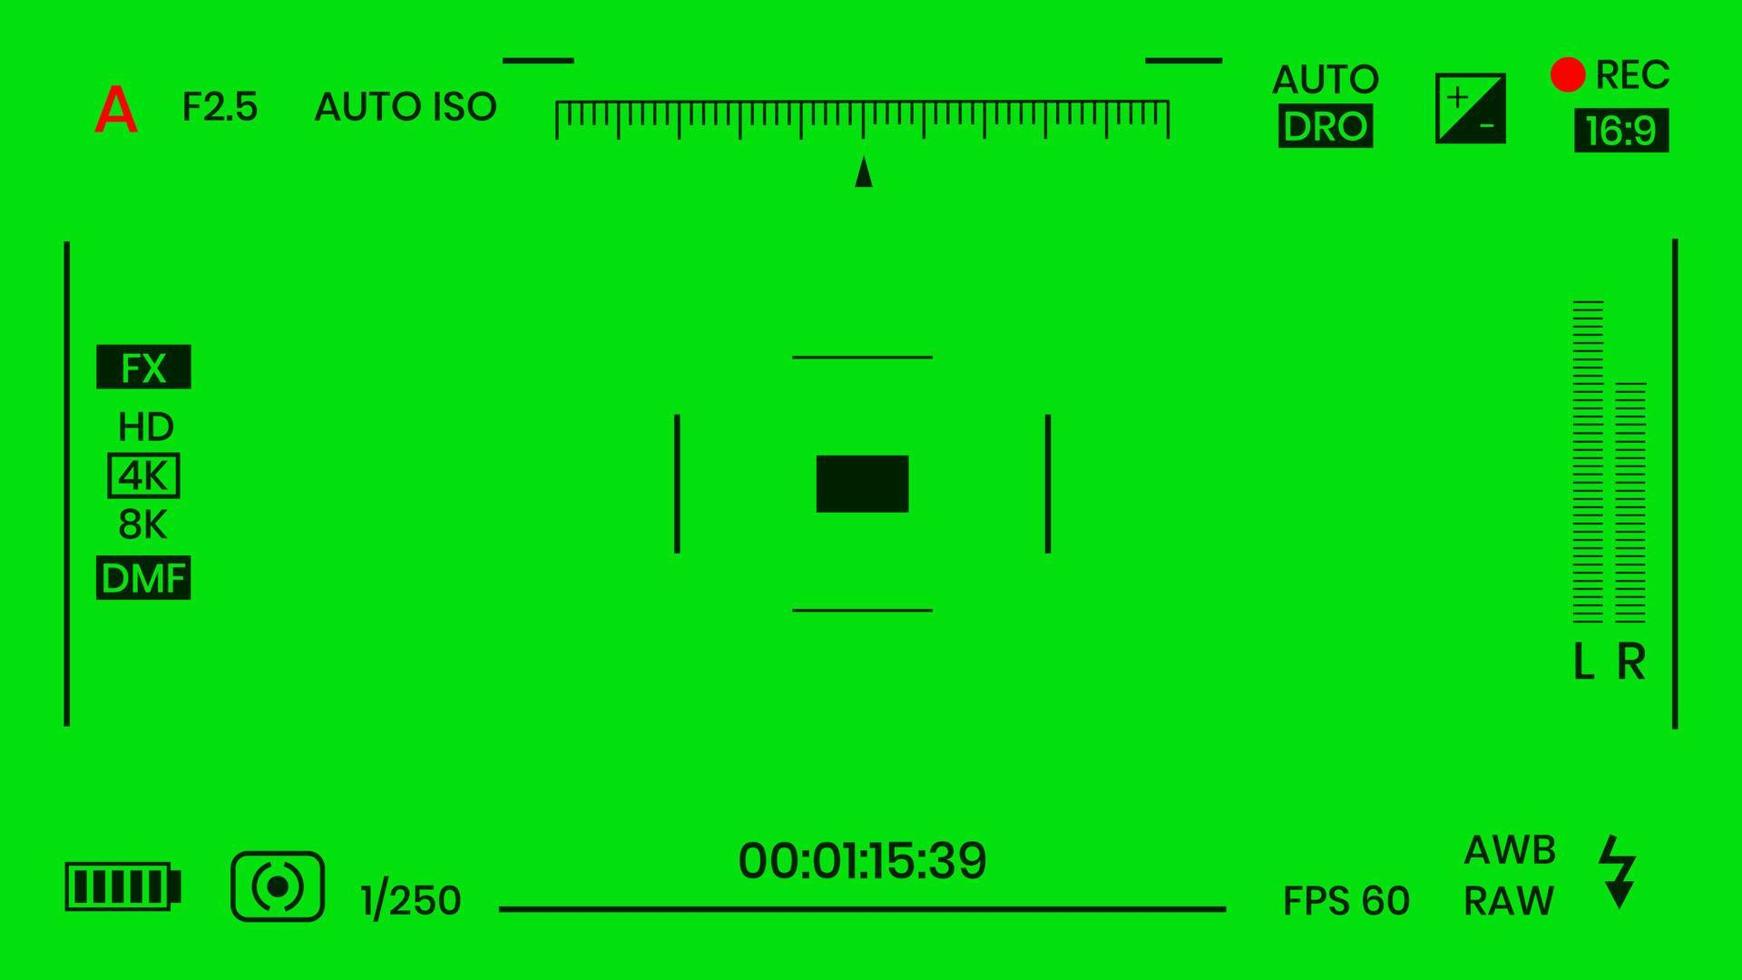 couleur verte chroma key caméra rec cadre viseur superposition fond écran plat style design illustration vectorielle. superposition de caméra à écran vfx chroma key concept d'arrière-plan abstrait pour les séquences vidéo vecteur